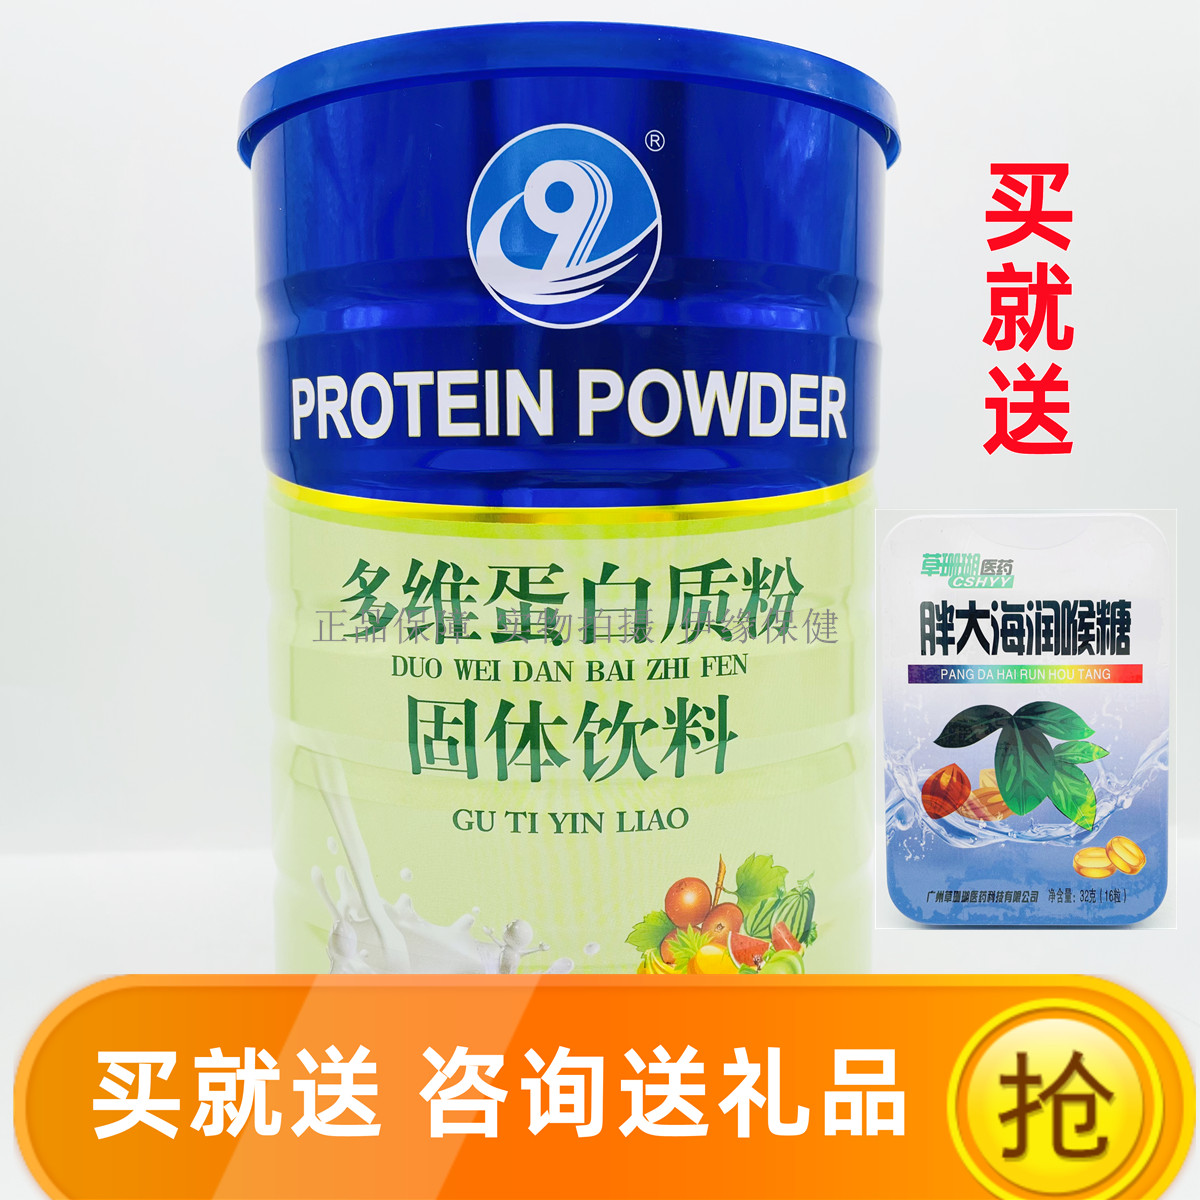 【买1罐送1罐 +4重礼品任选】华联生物多维蛋白质粉